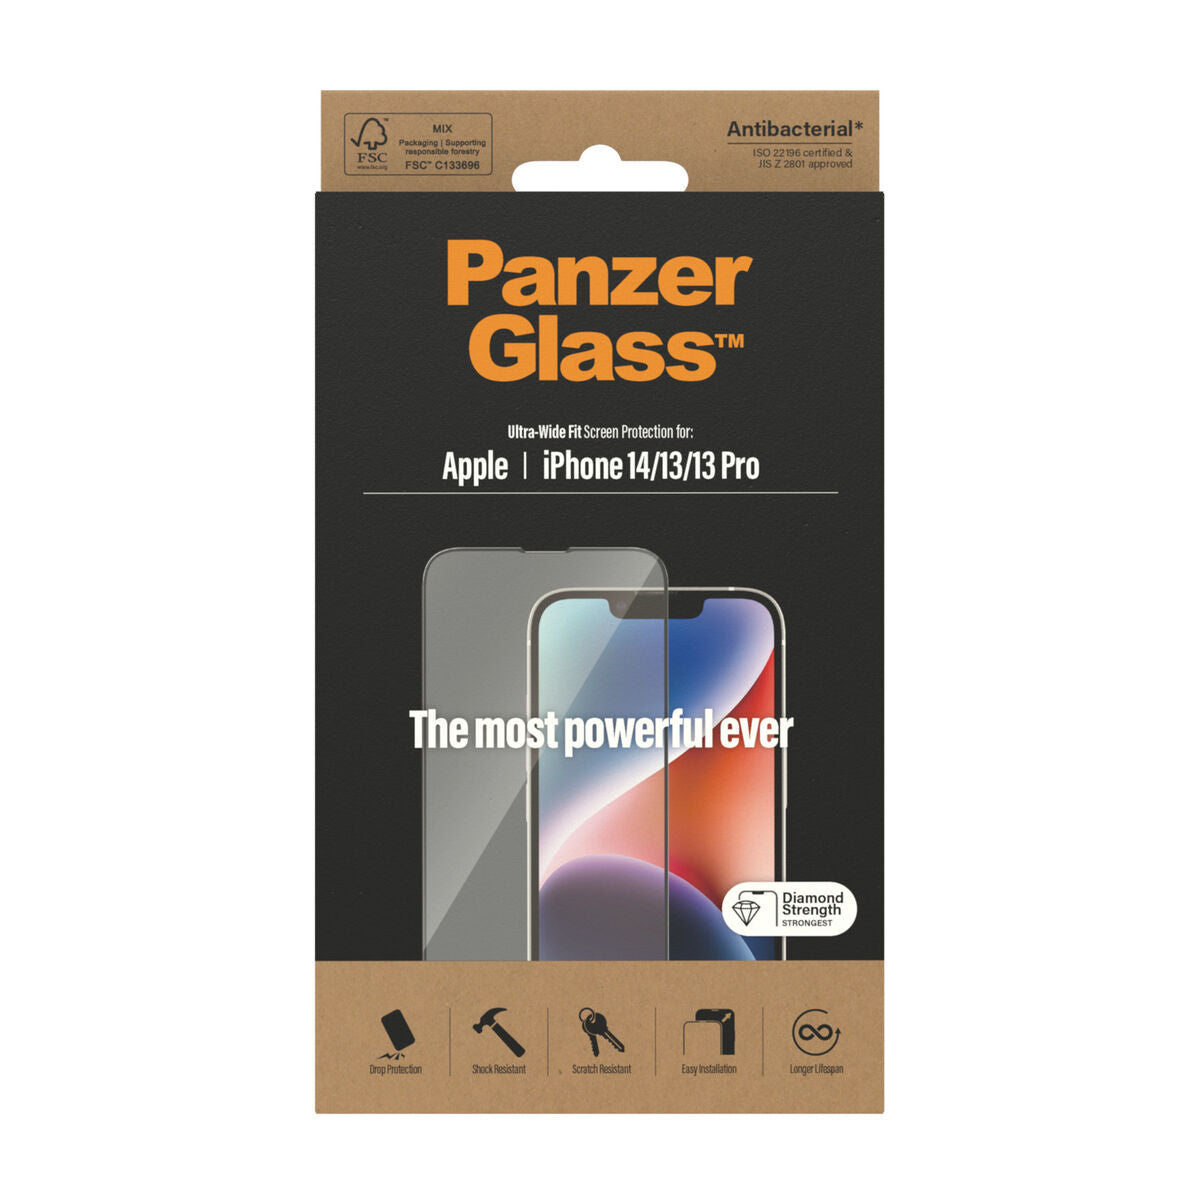 Protection pour Écran Panzer Glass Iphone 14/13/13 Pro